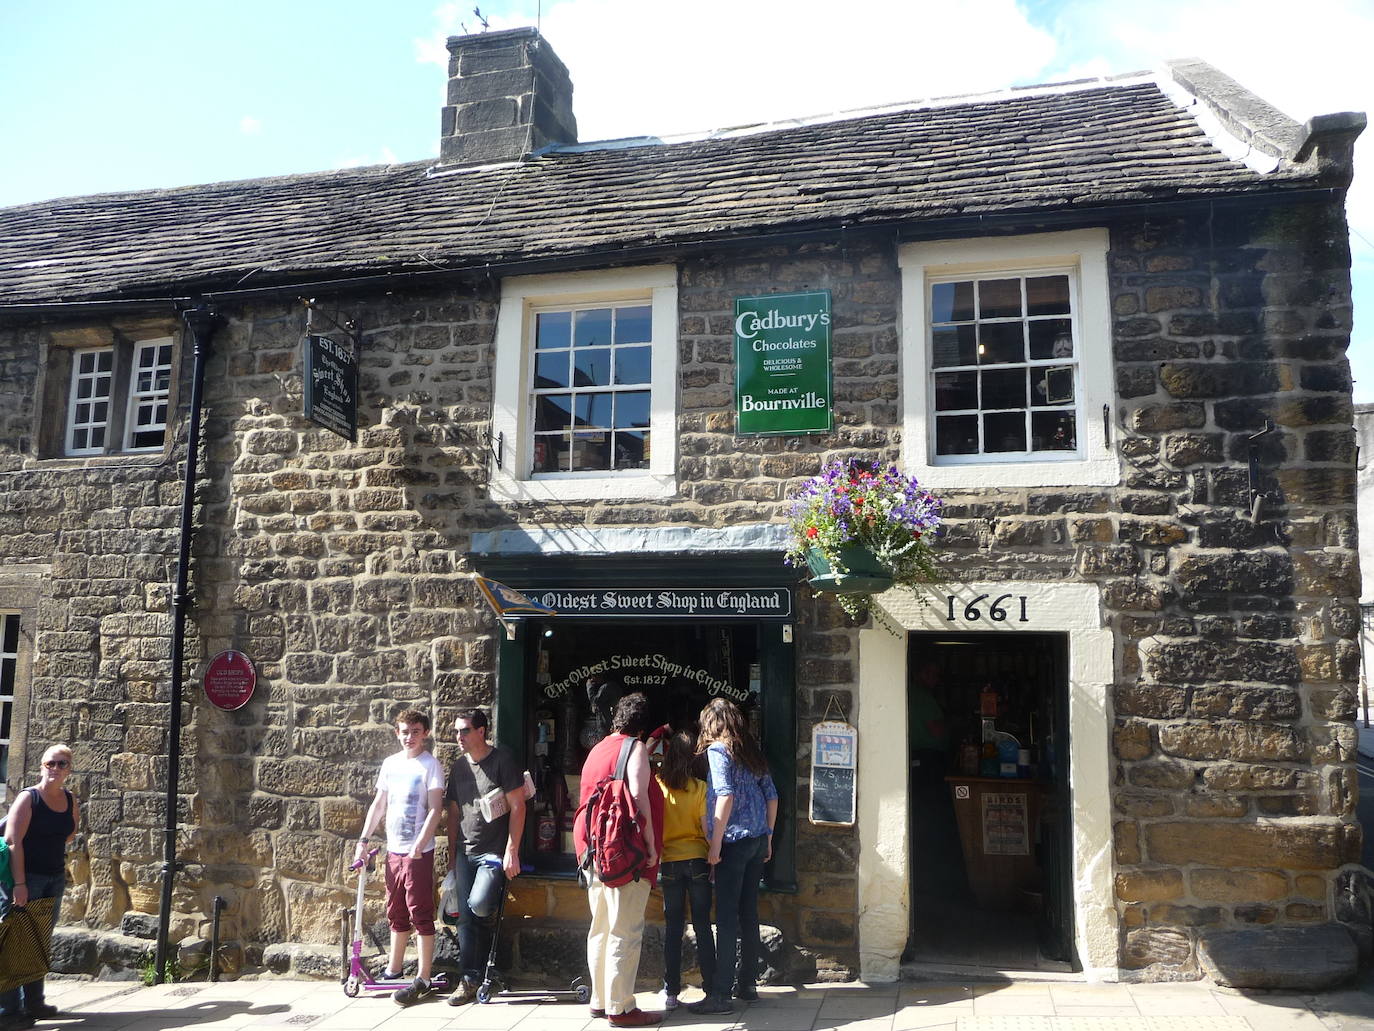 The Oldest Sweet Shop in England aparece en el libro Guinness por ser la tienda de golosinas más antigua del mundo (data de 1827).